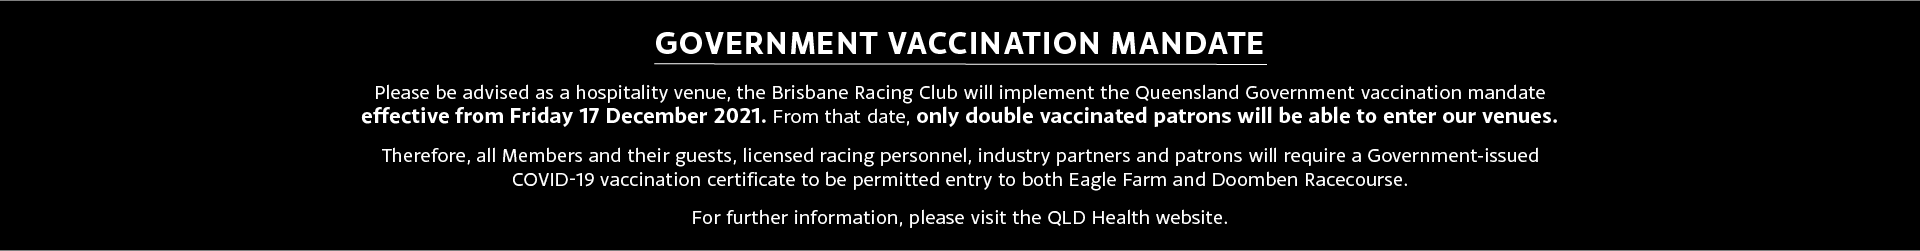 Covid vaccine mandate banner updated | Brisbane Racing Club